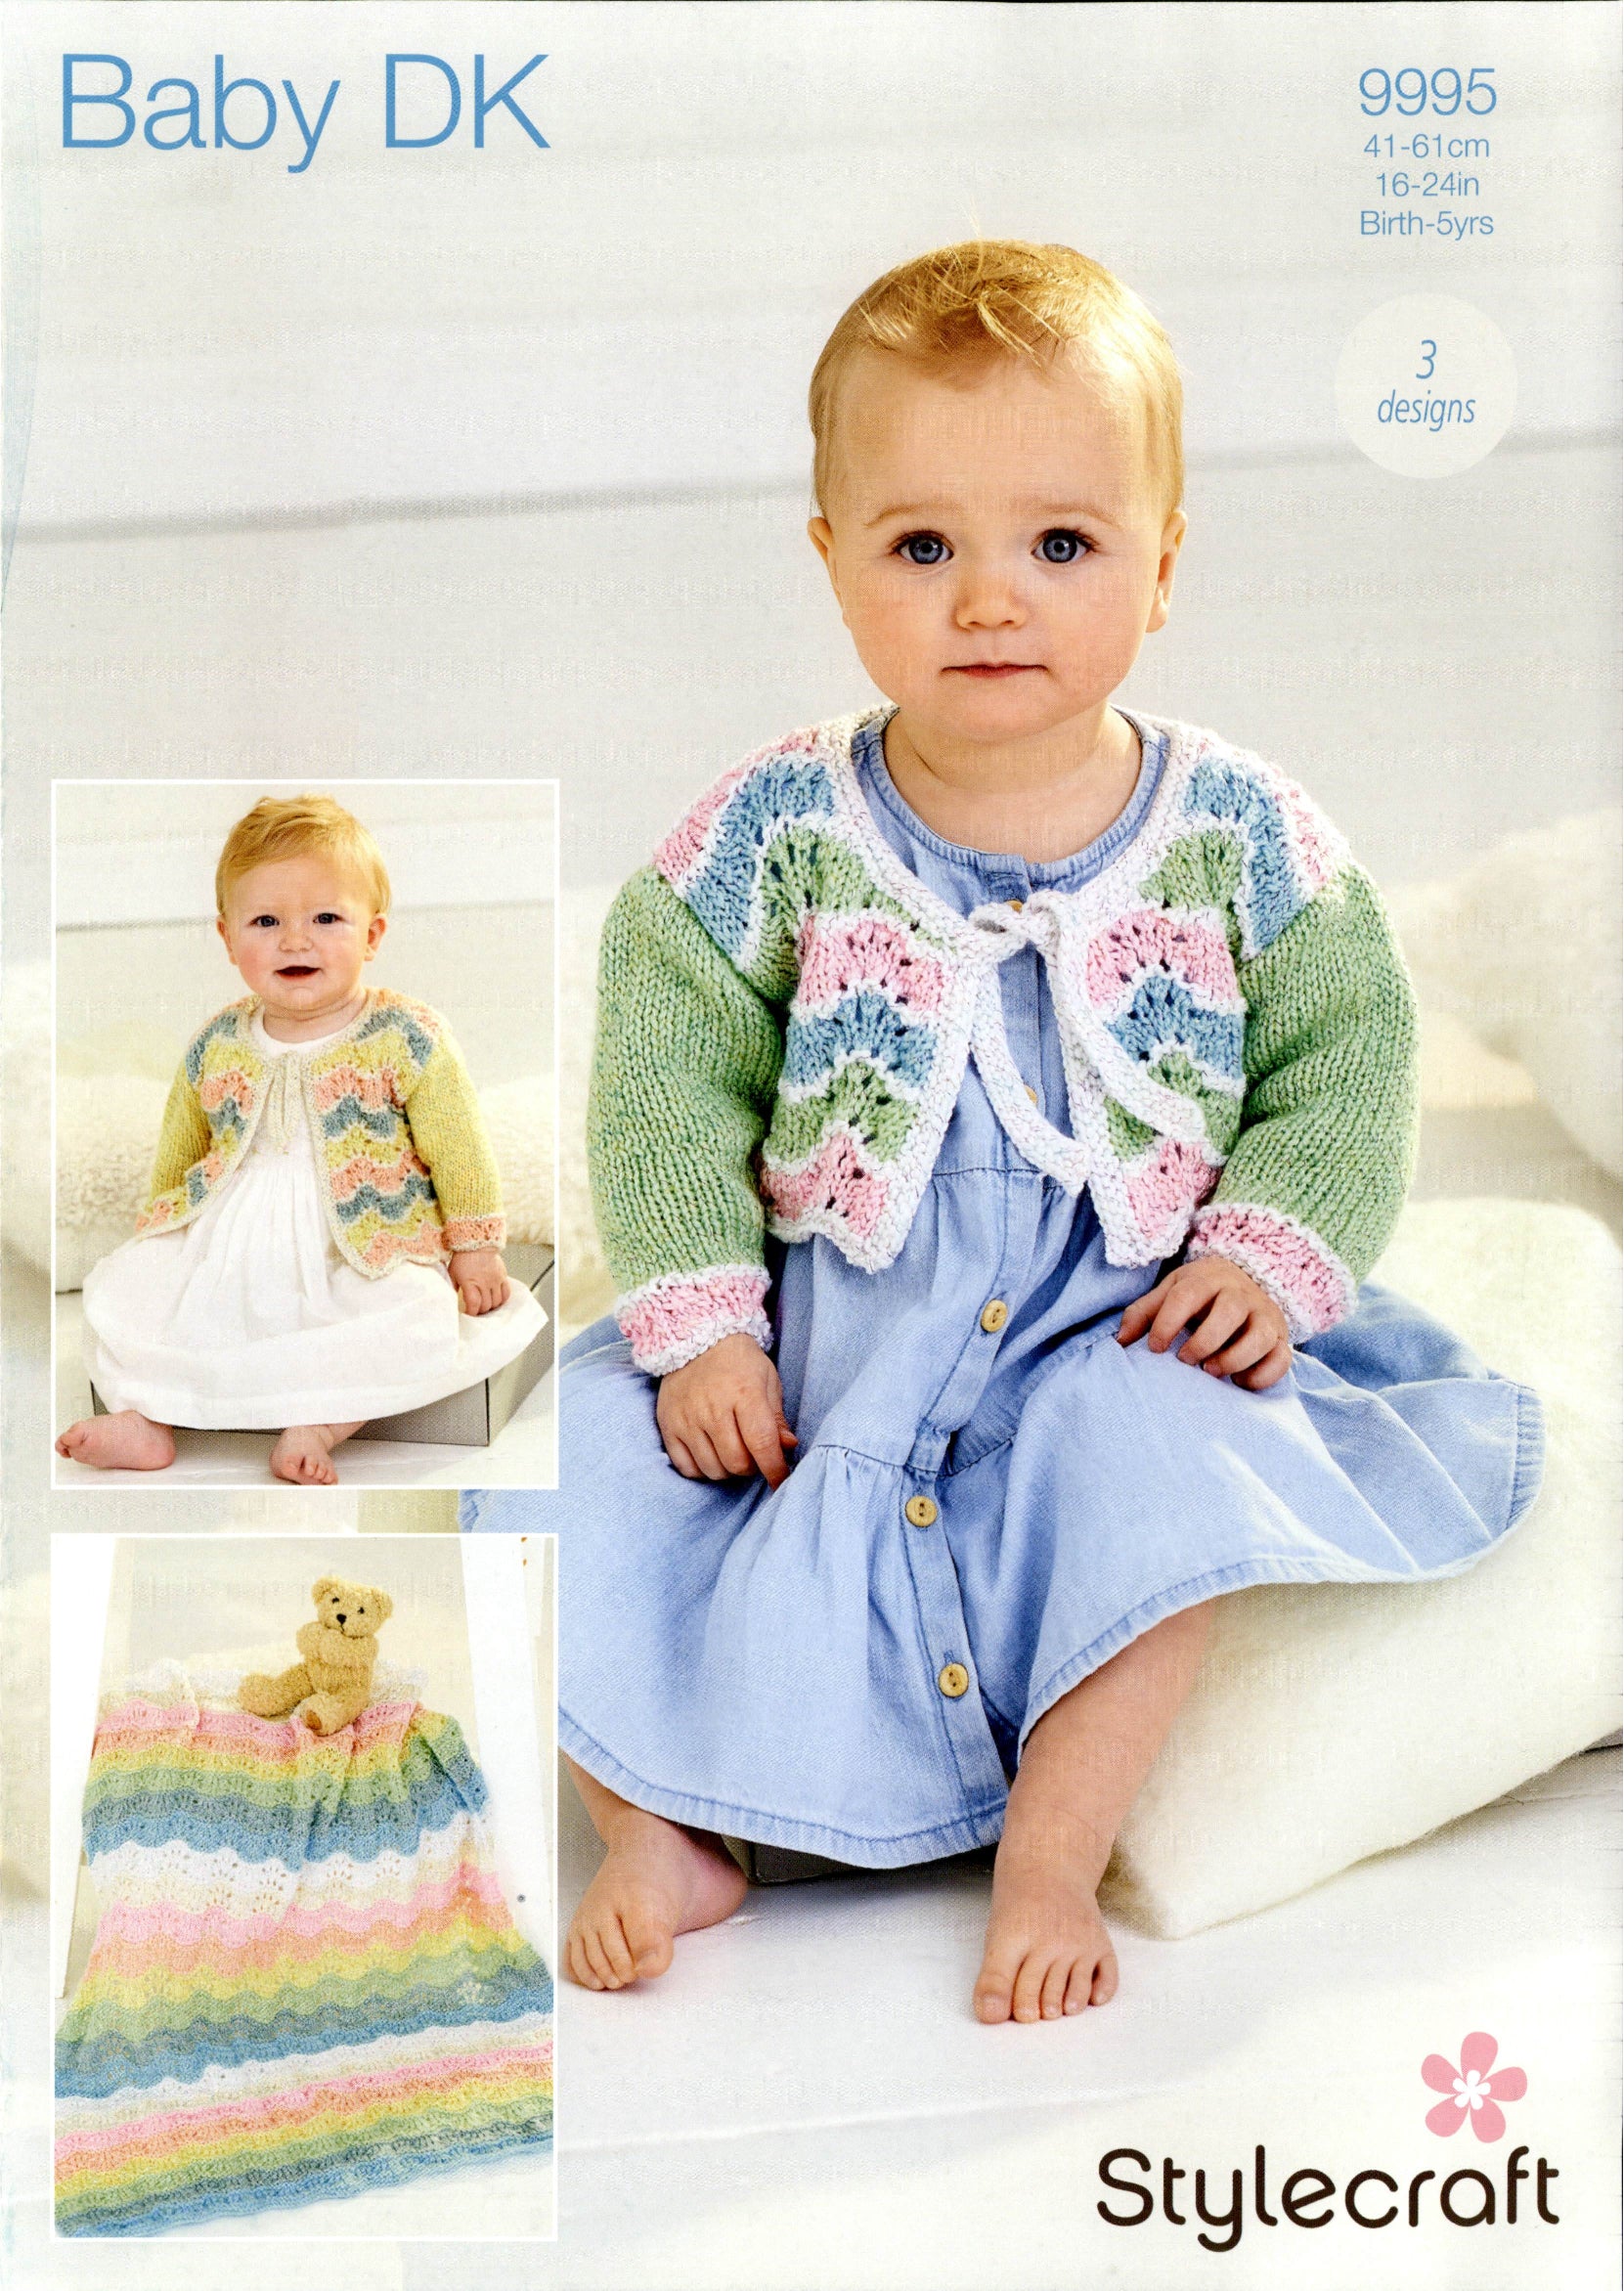 Stylecraft Baby Sparkle DK - Cardigans & Blanket (9995)